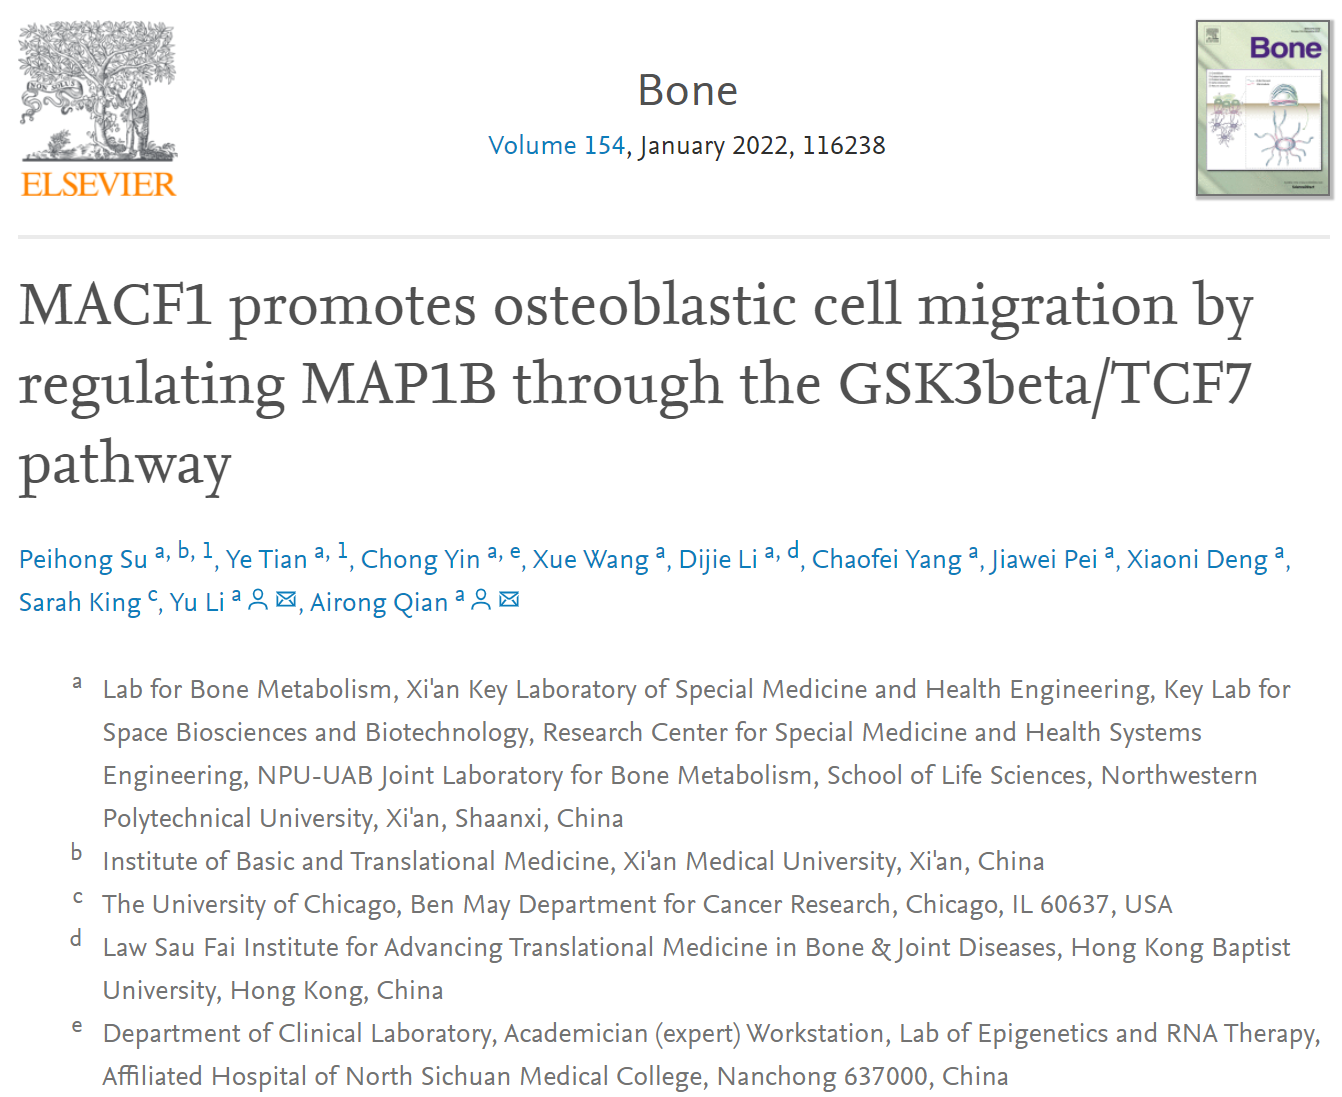 Bone：MACF1通过GSK3β/TCF7通路上调MAP1B促进成骨系细胞迁移